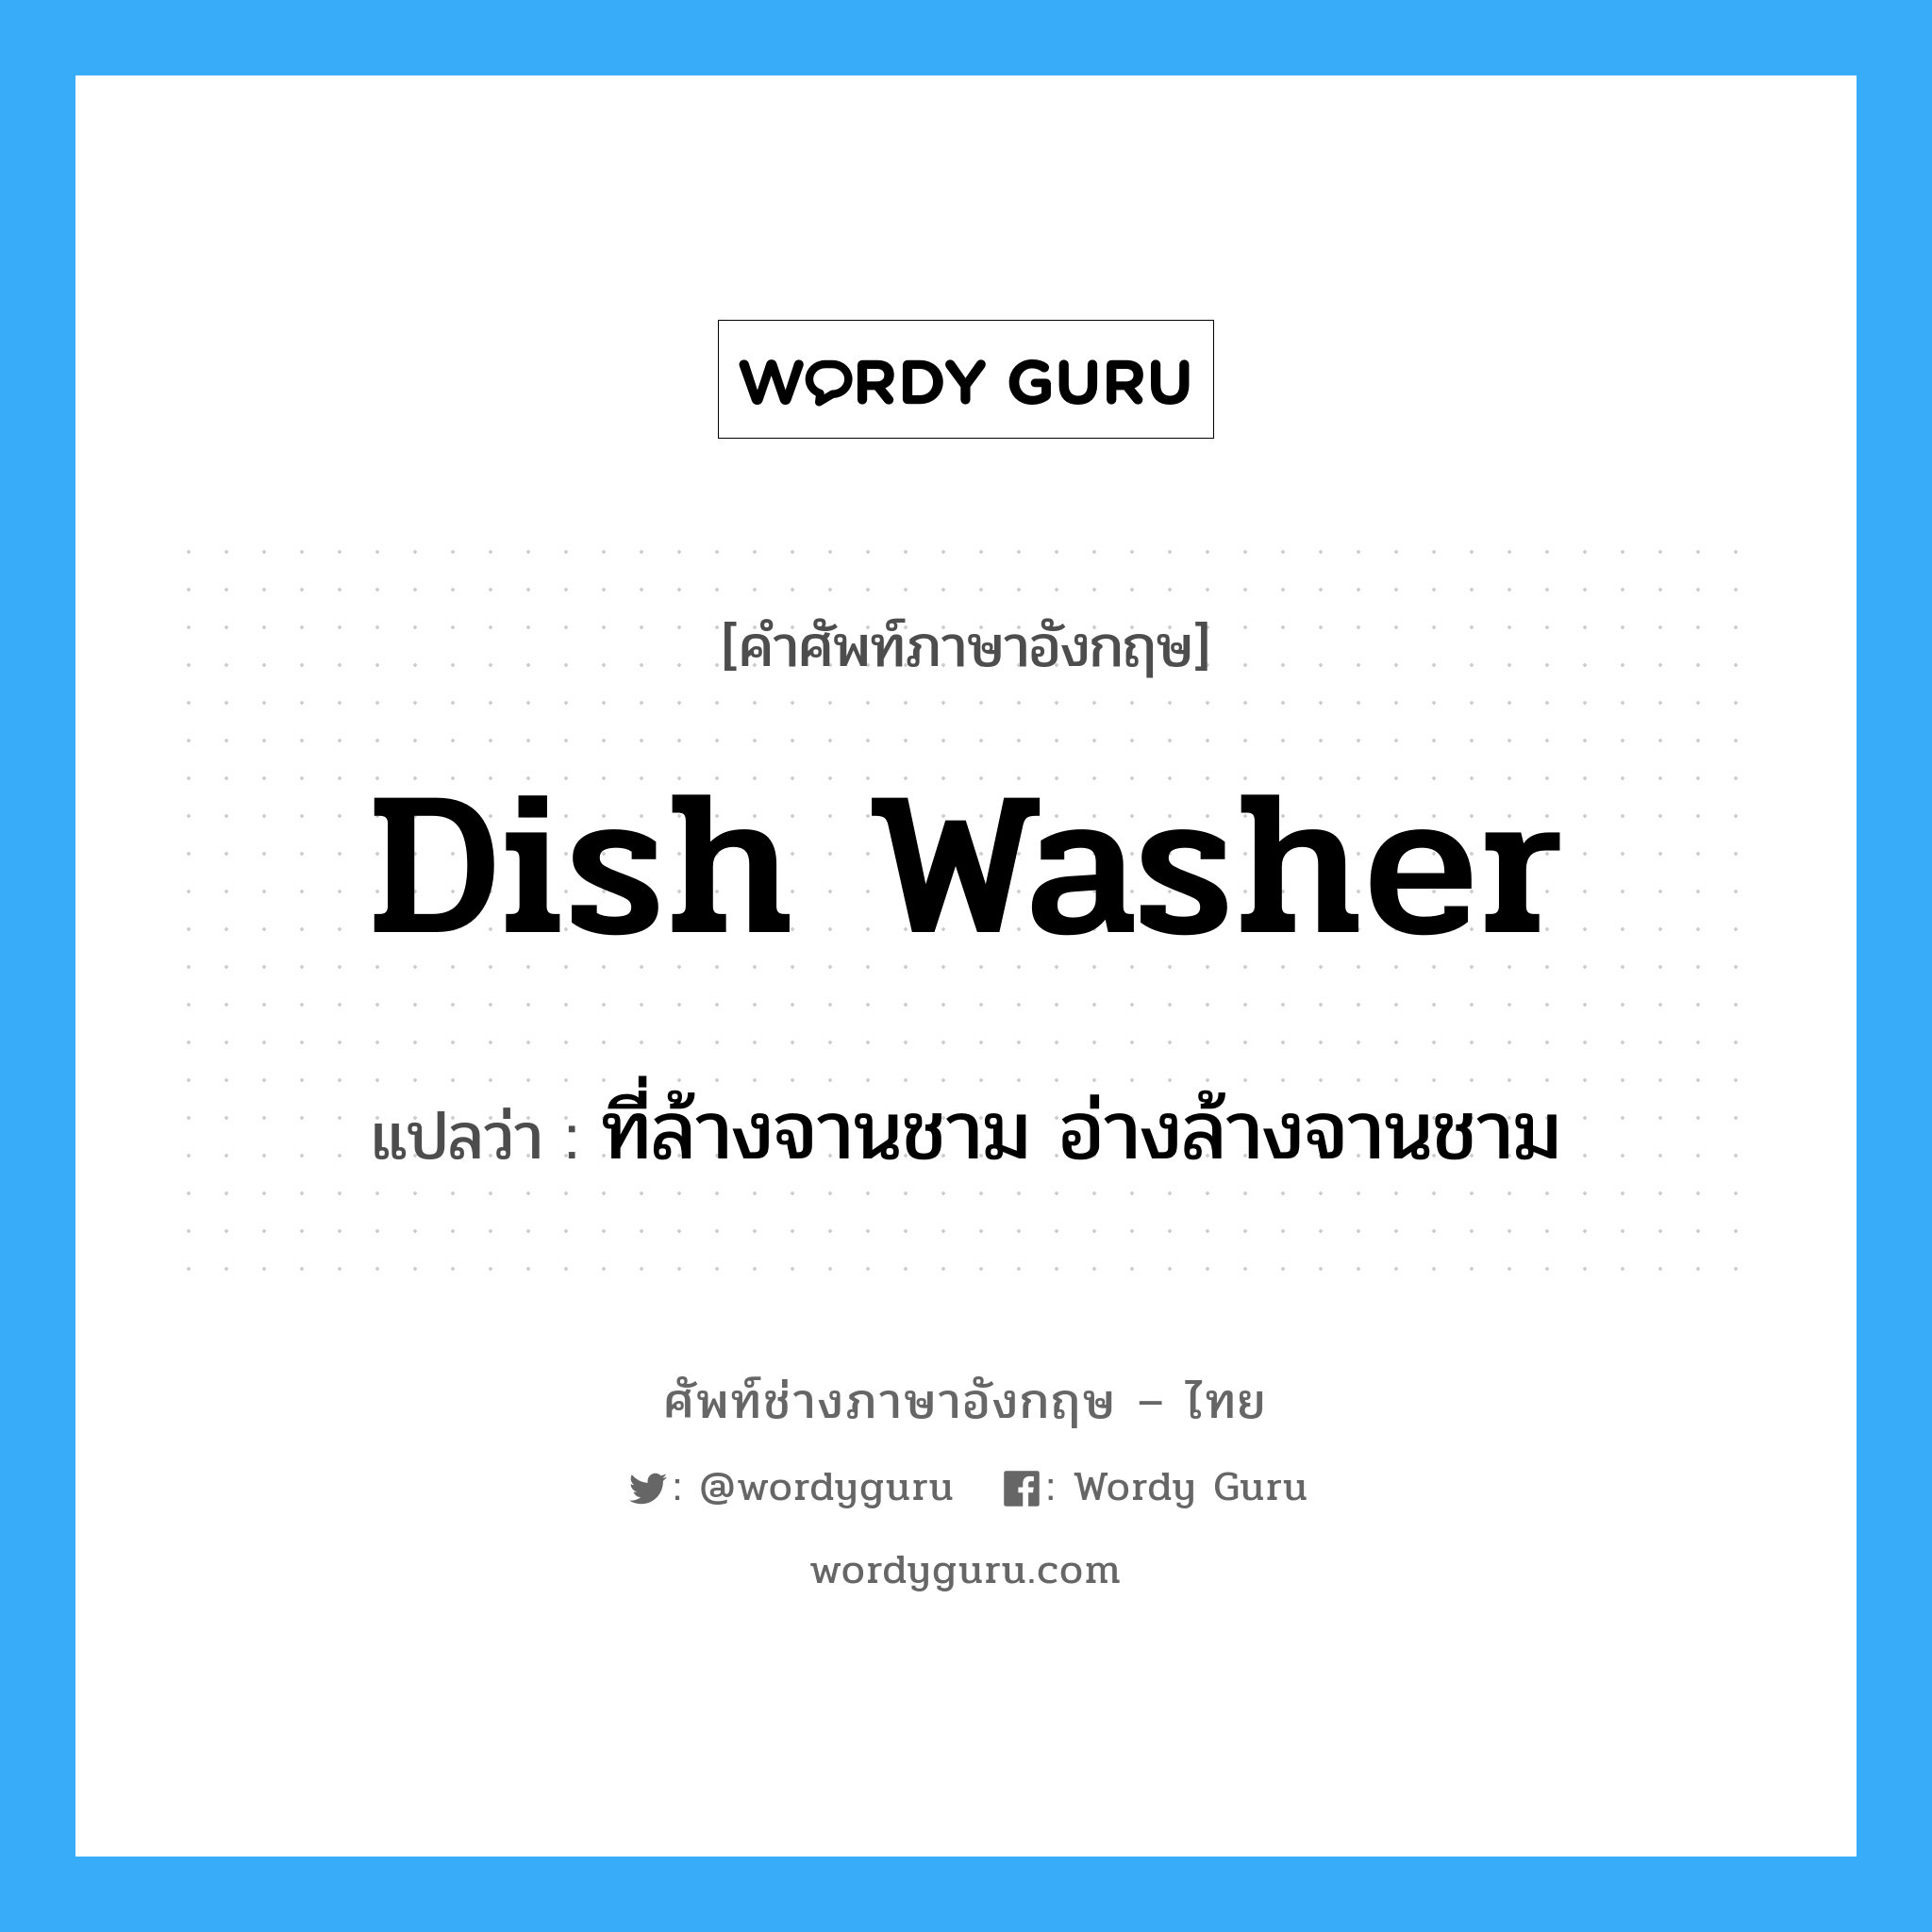 dish washer แปลว่า?, คำศัพท์ช่างภาษาอังกฤษ - ไทย dish washer คำศัพท์ภาษาอังกฤษ dish washer แปลว่า ที่ล้างจานชาม อ่างล้างจานชาม